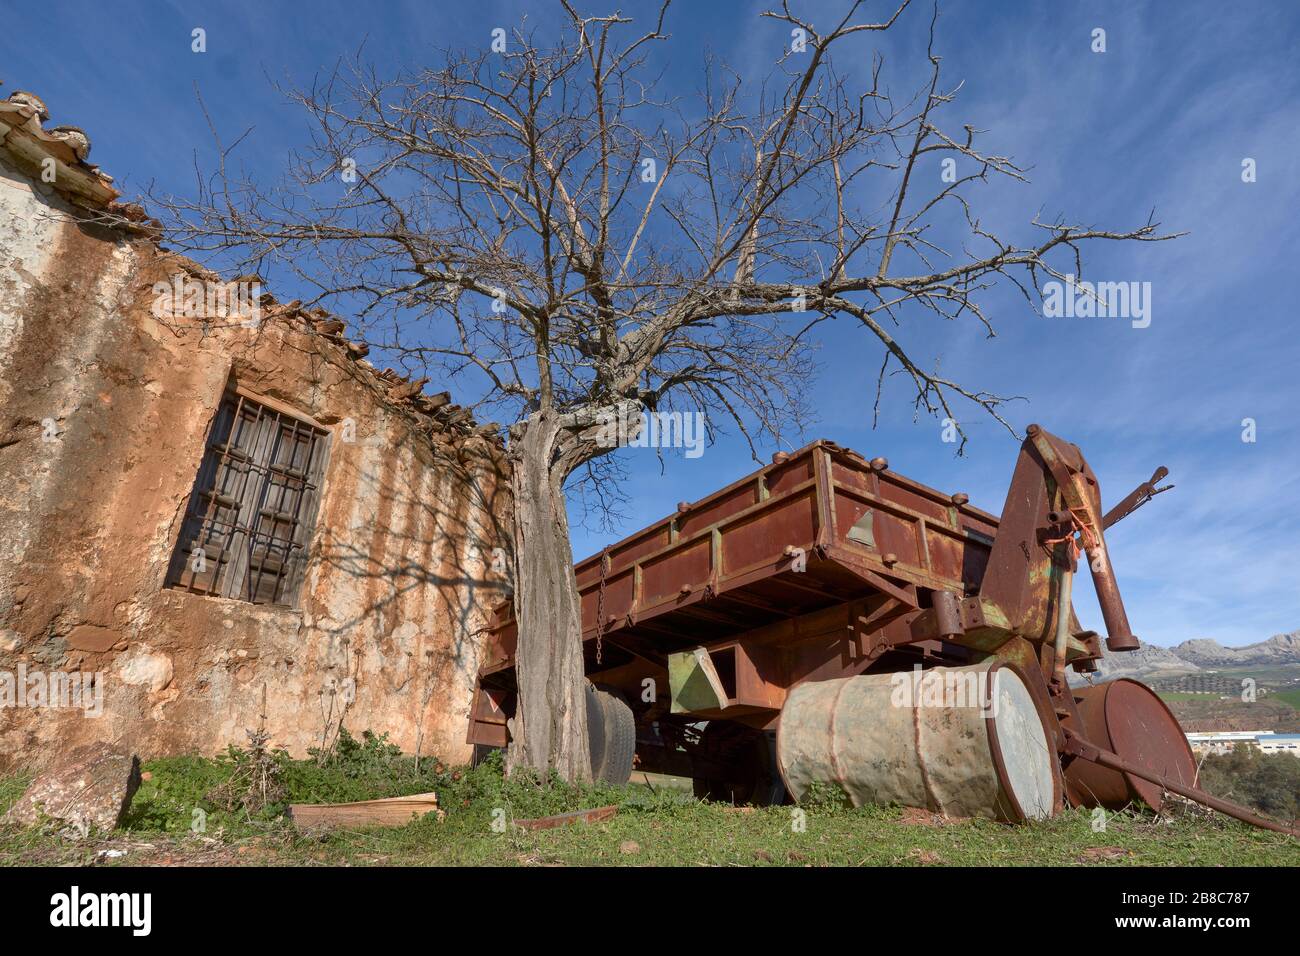 Ferme ruinée avec machines agricoles à Casabermeja, Malaga. Espagne. Banque D'Images